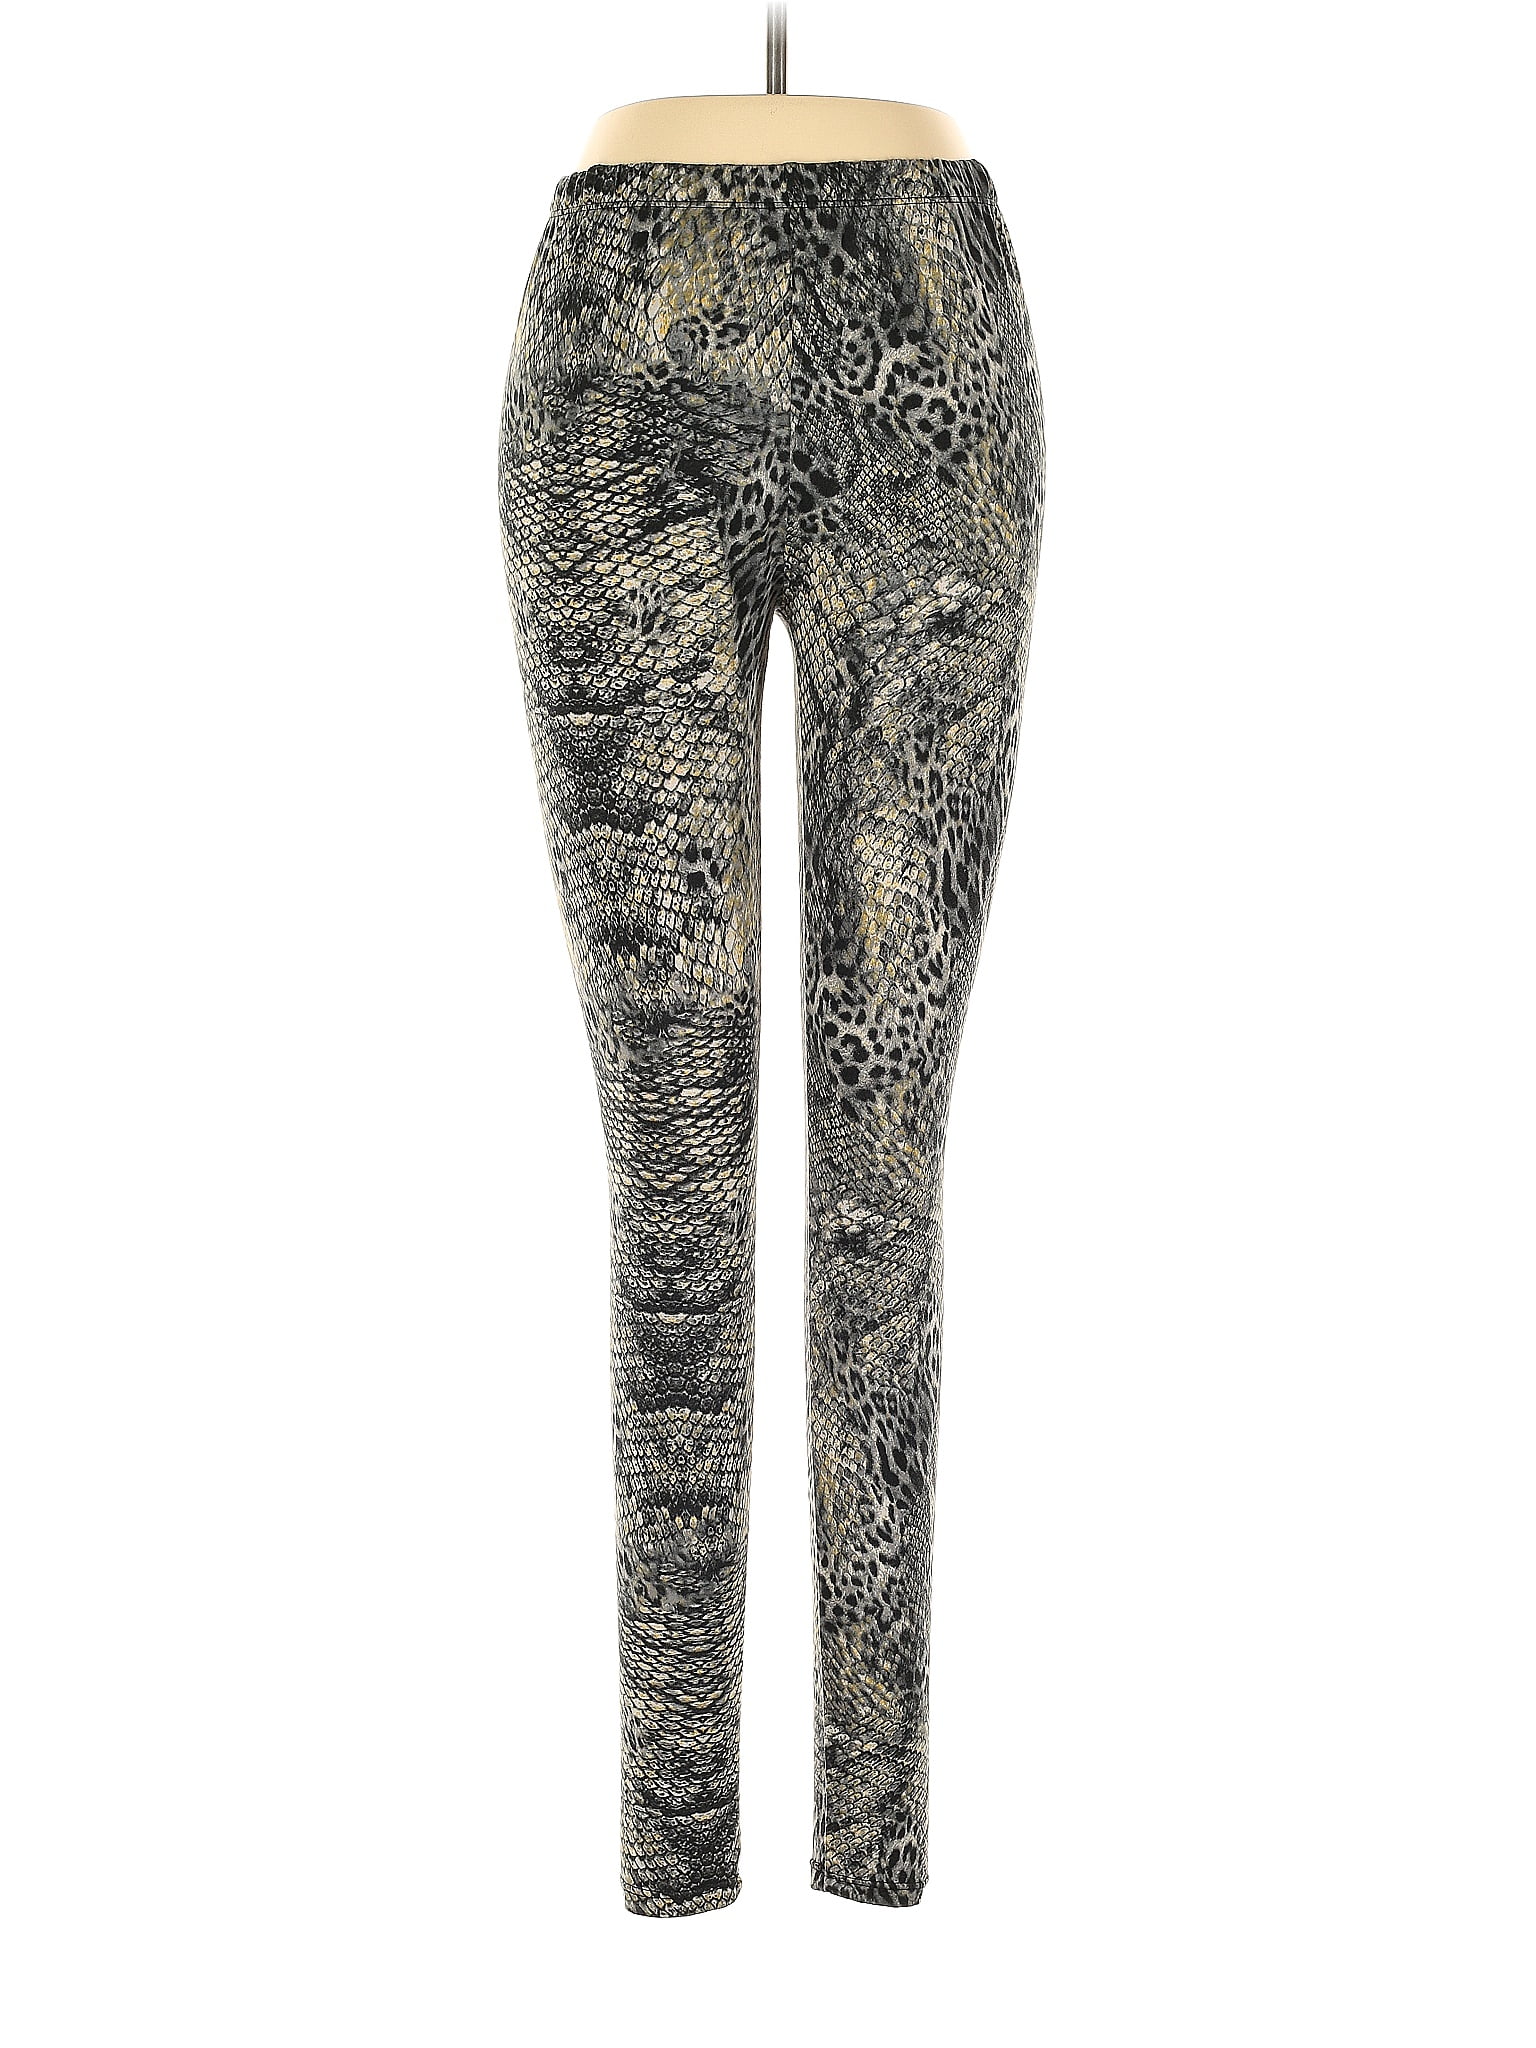 Bobbie Brooks, Pants & Jumpsuits, Bobbie Brooks 2x Black Floral Leggings